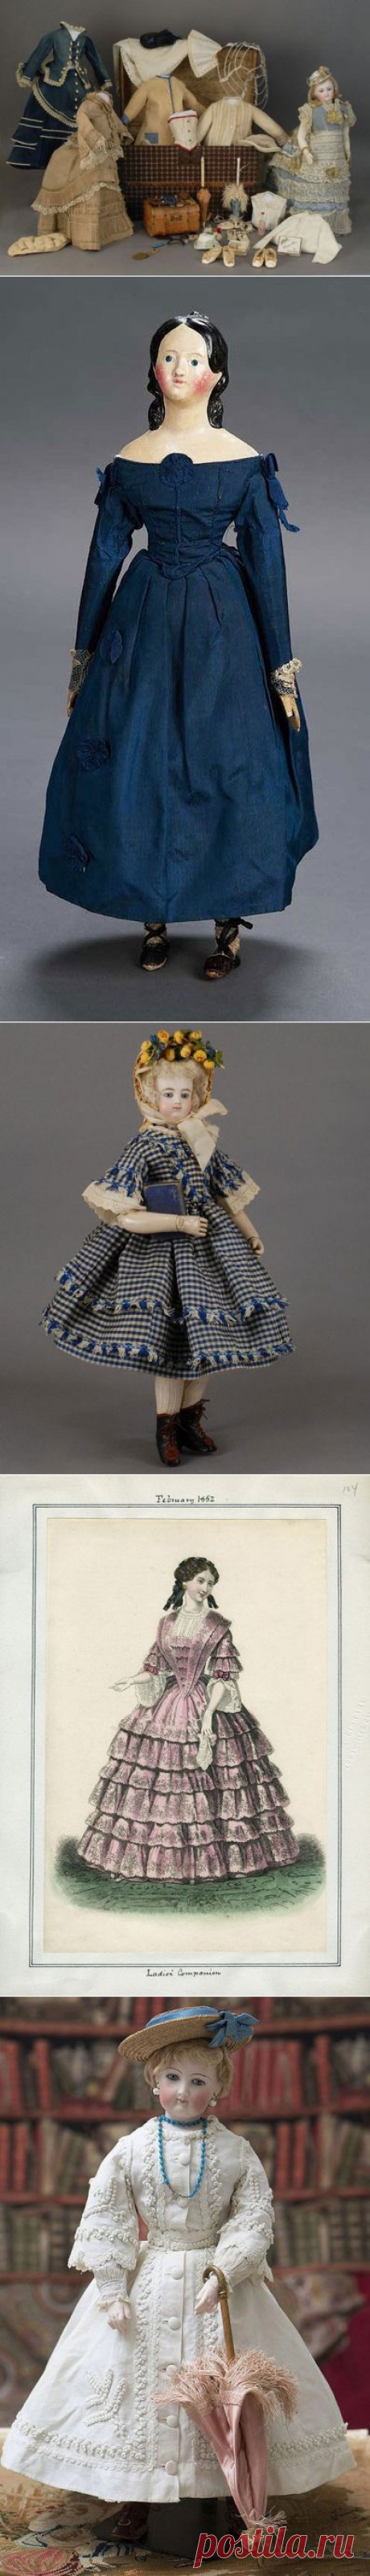 Очаровательные куклы ХIХ века и их гардероб — Рукоделие